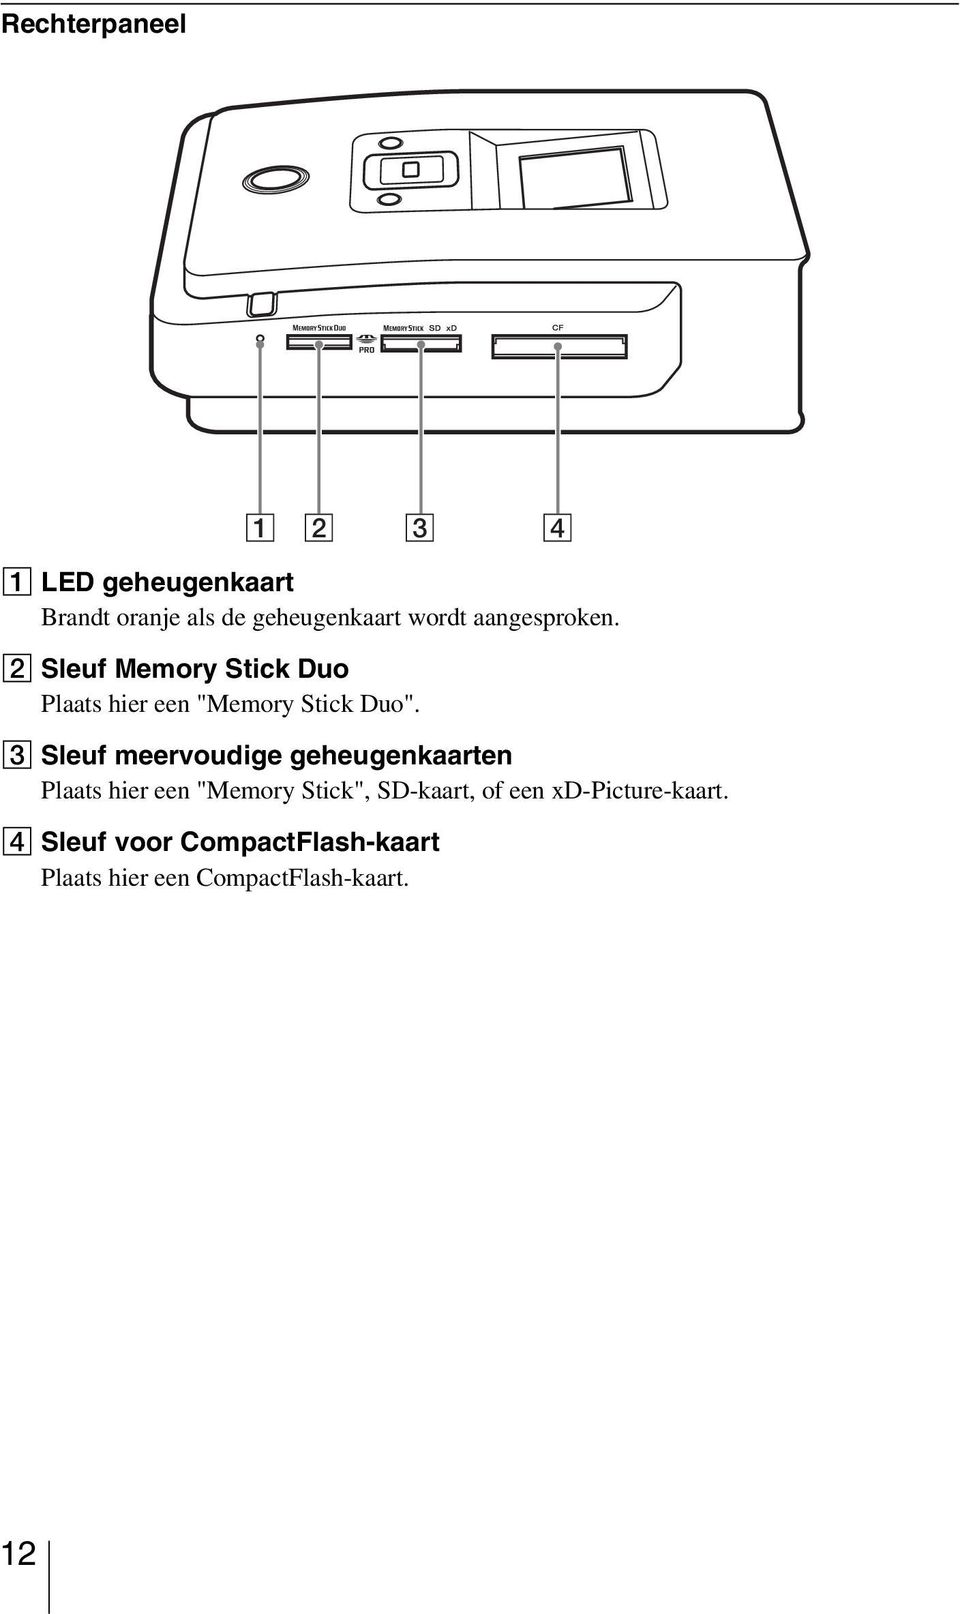 C Sleuf meervoudige geheugenkaarten Plaats hier een "Memory Stick", SD-kaart, of